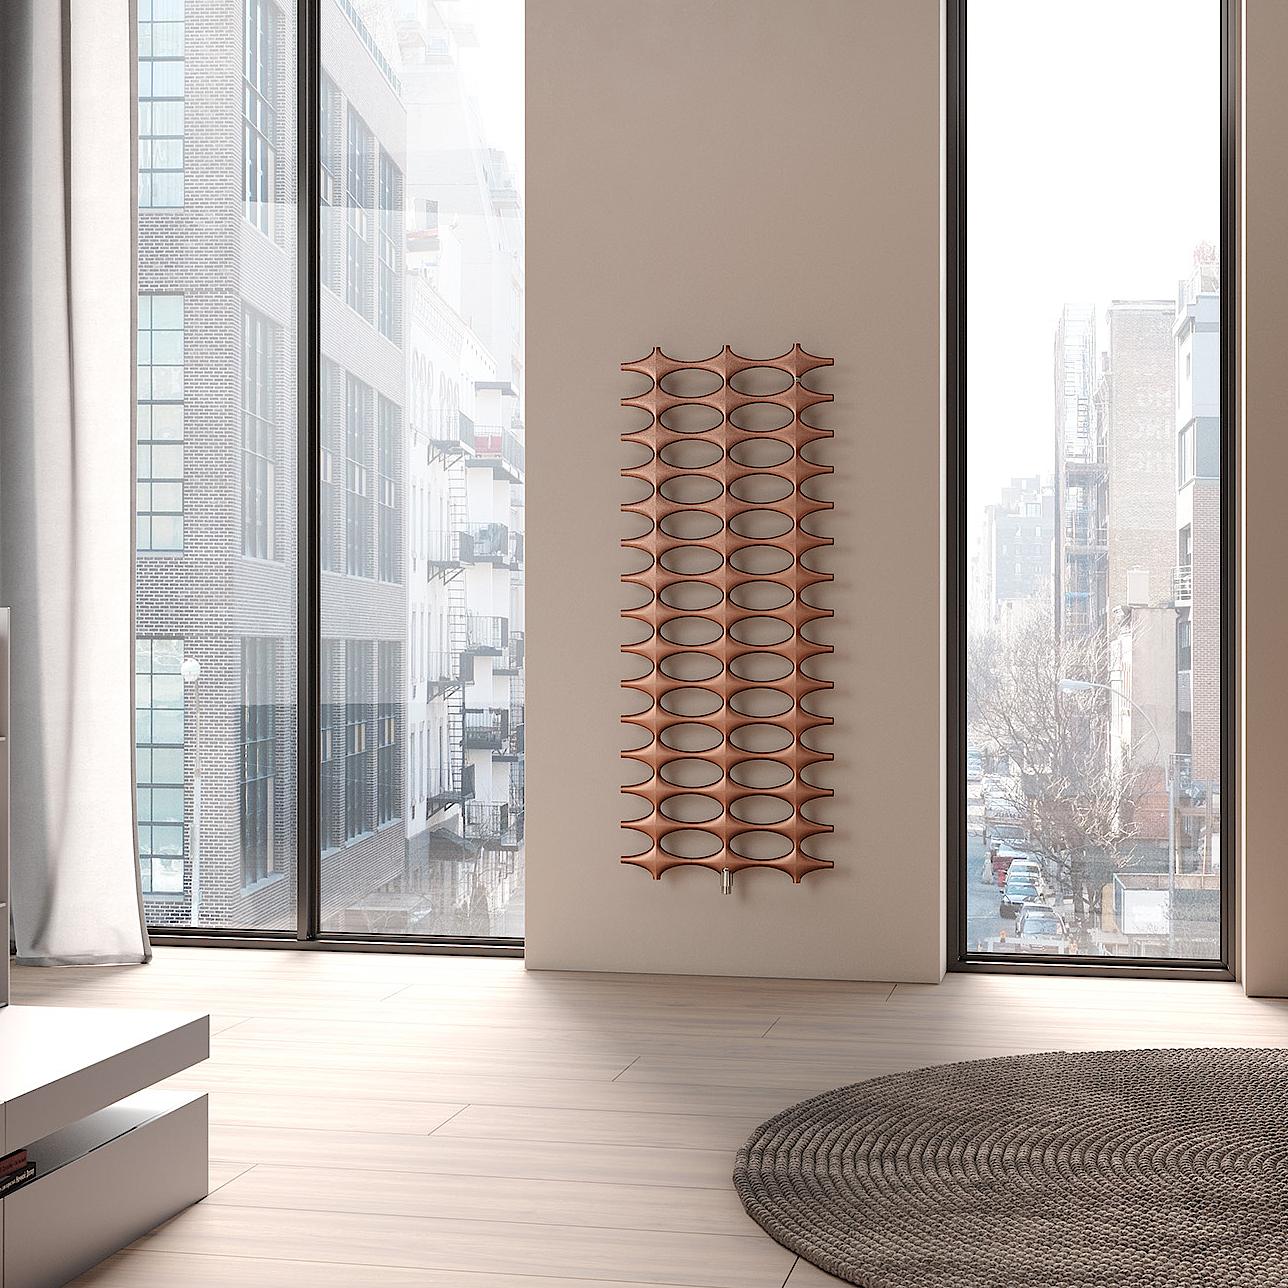 Grzejniki dekoracyjne i łazienkowe Kermi Ideos – unikatowe wzornictwo grzejników w elementarnej konstrukcji.